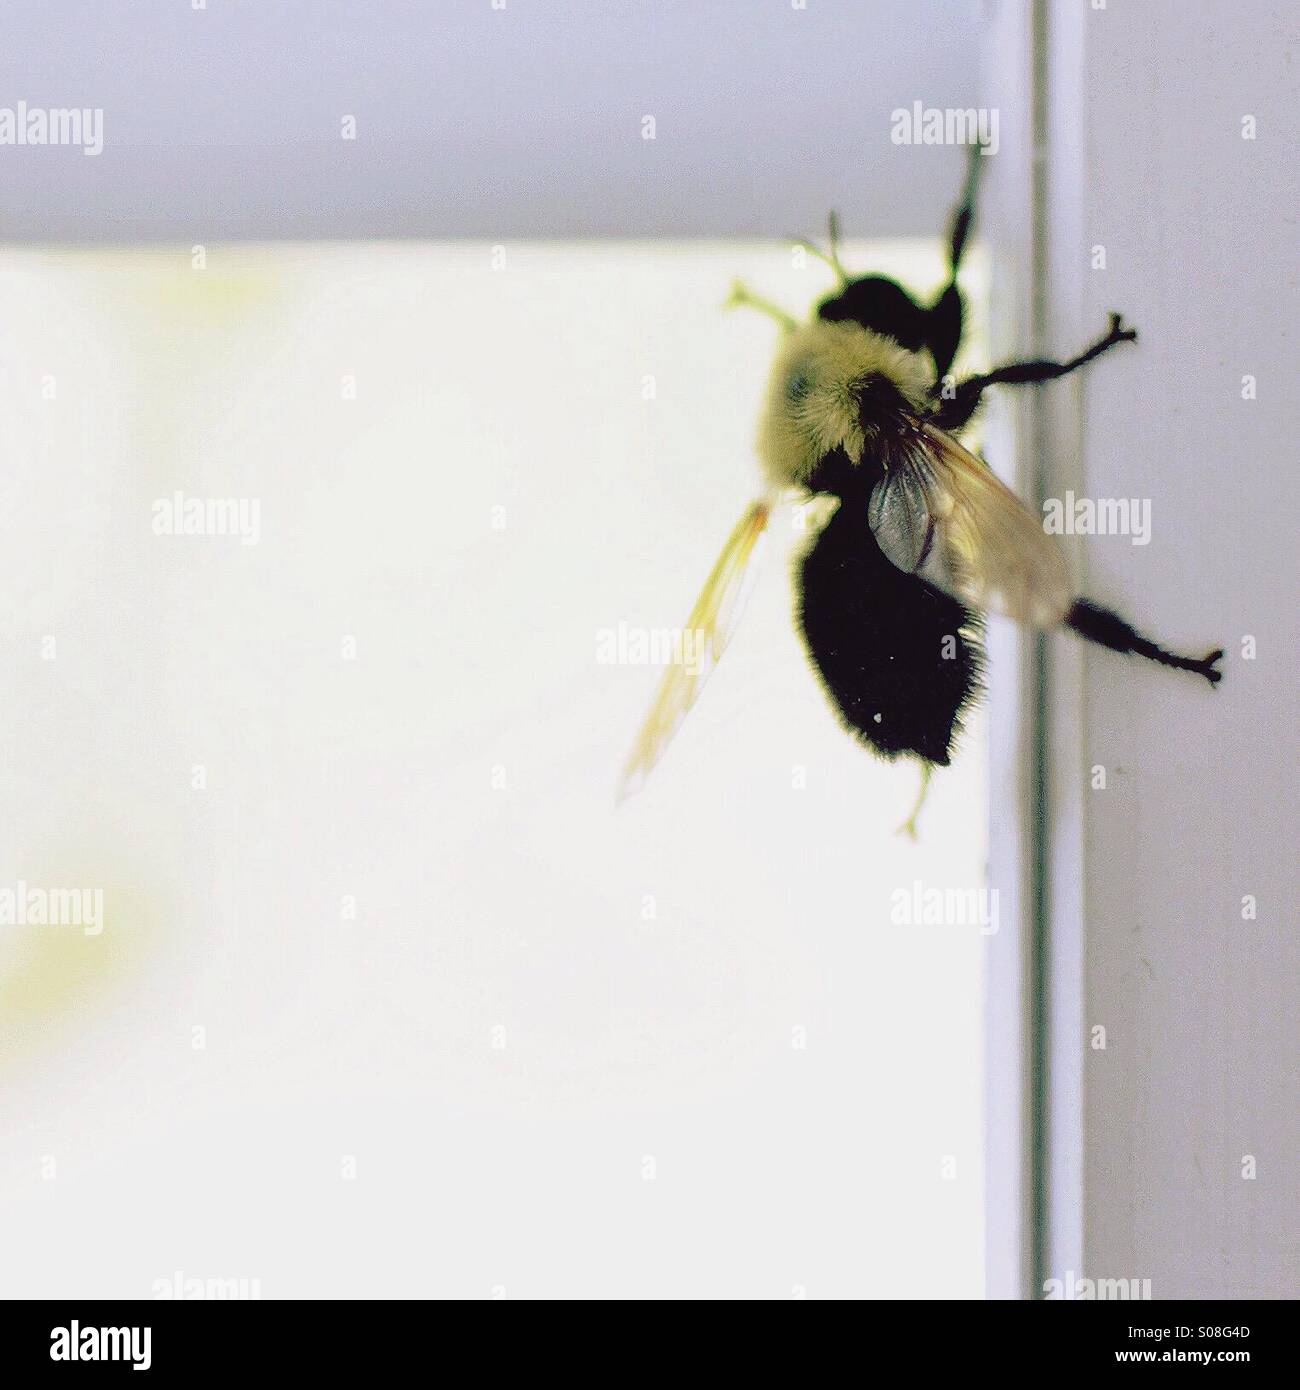 Bumble bee in window Stock Photo